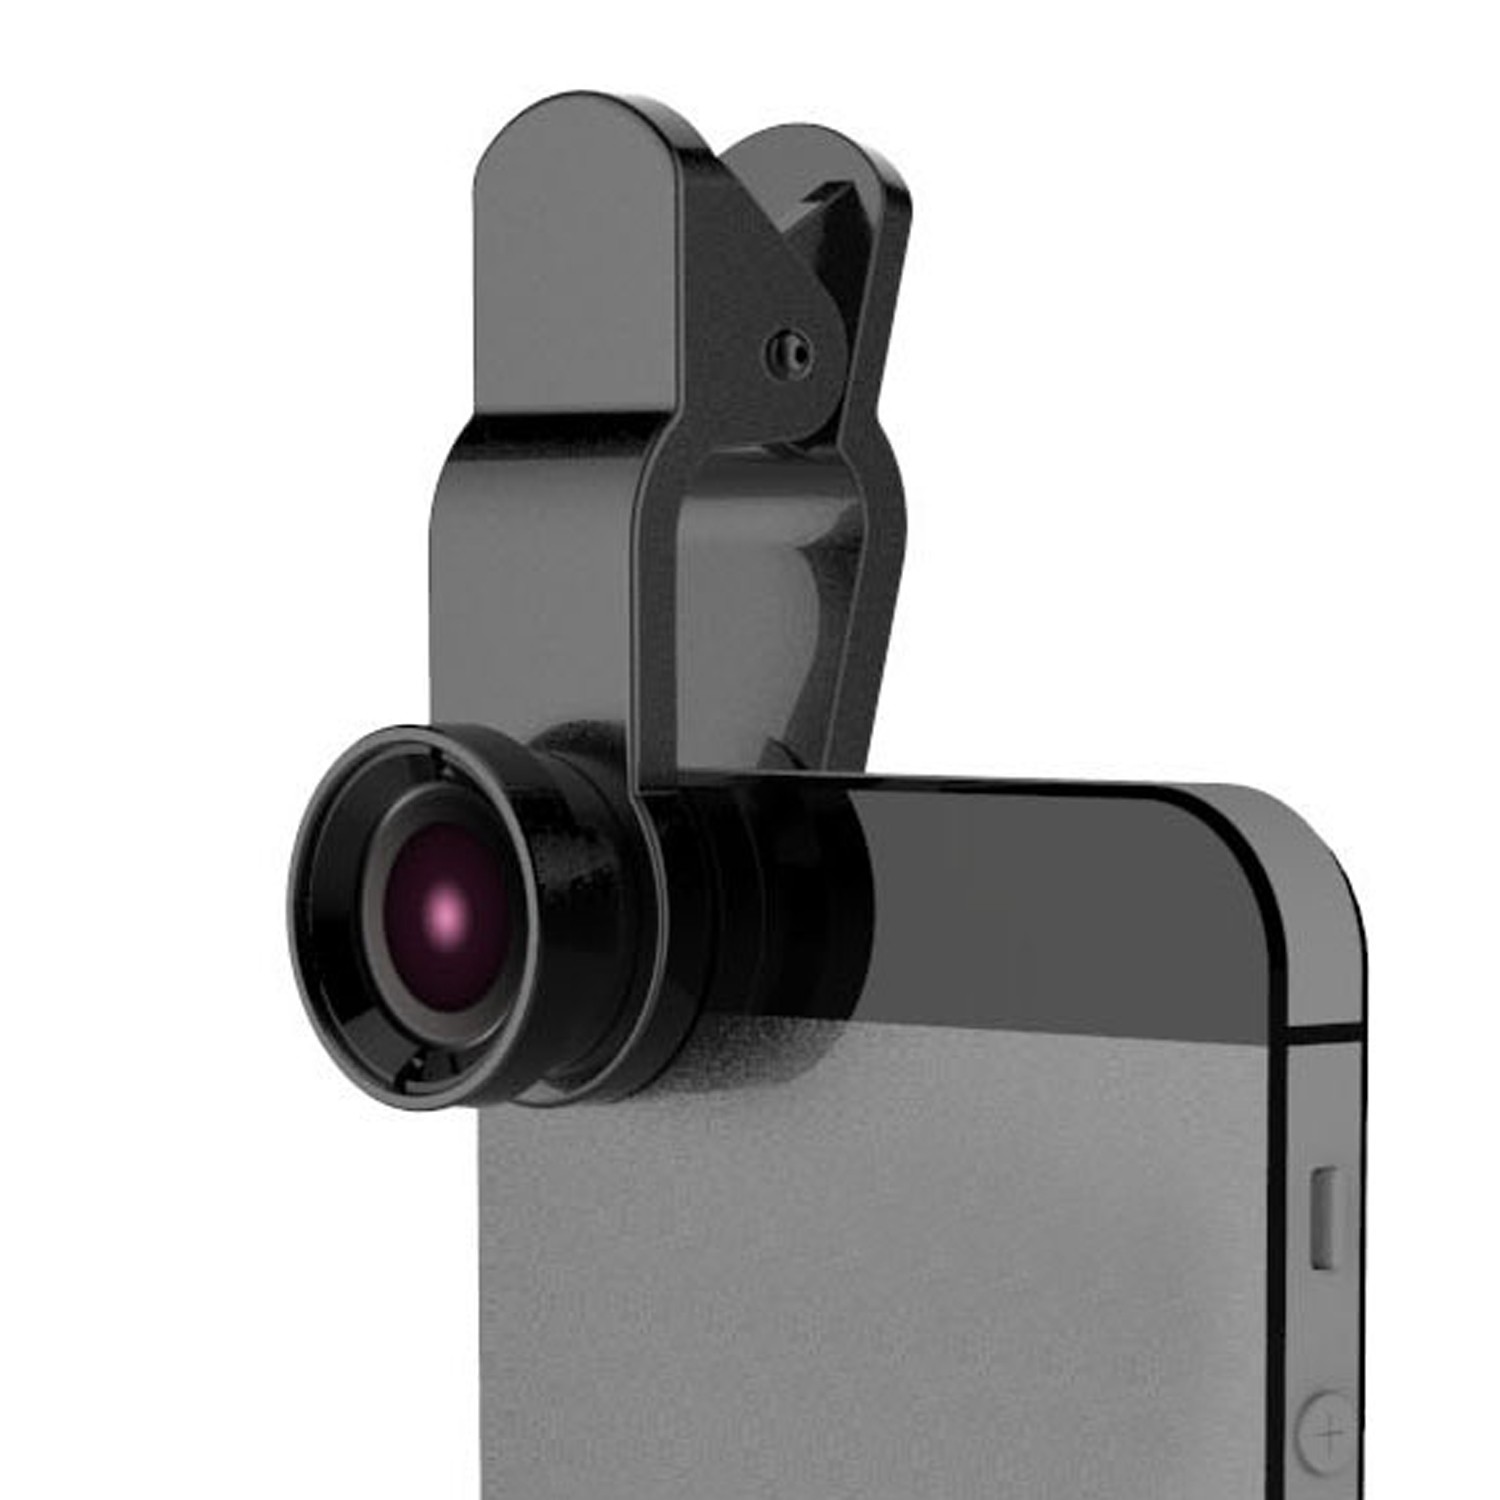 Přídavná čočka na mobil 3v1 - rybí oko, makro, širokoúhlý objektiv